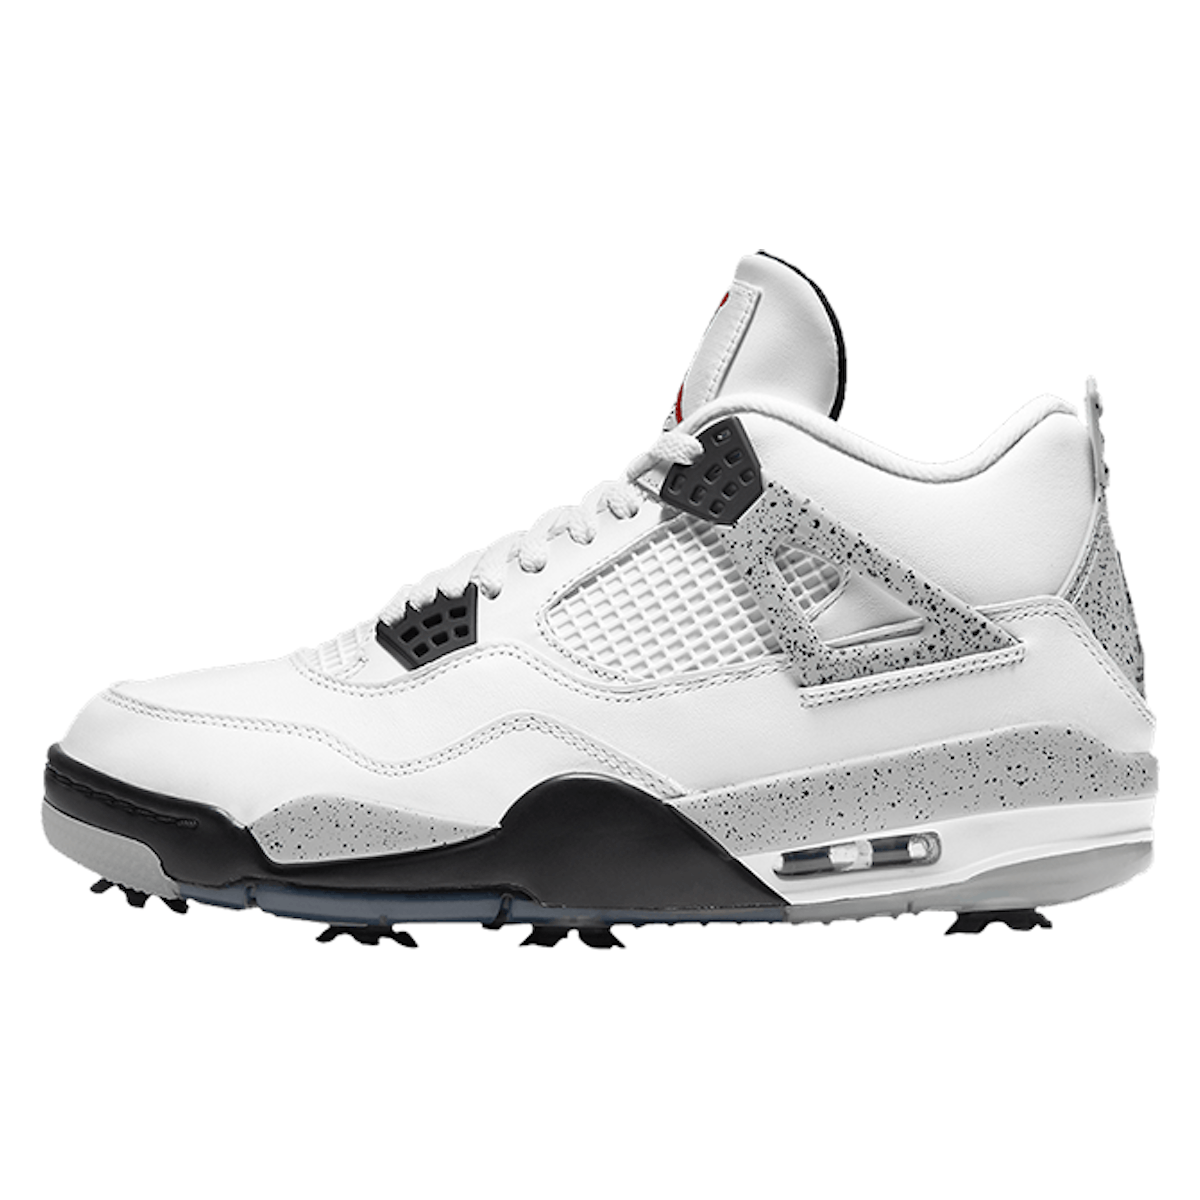 Air Jordan 4 Golf "White Cement"